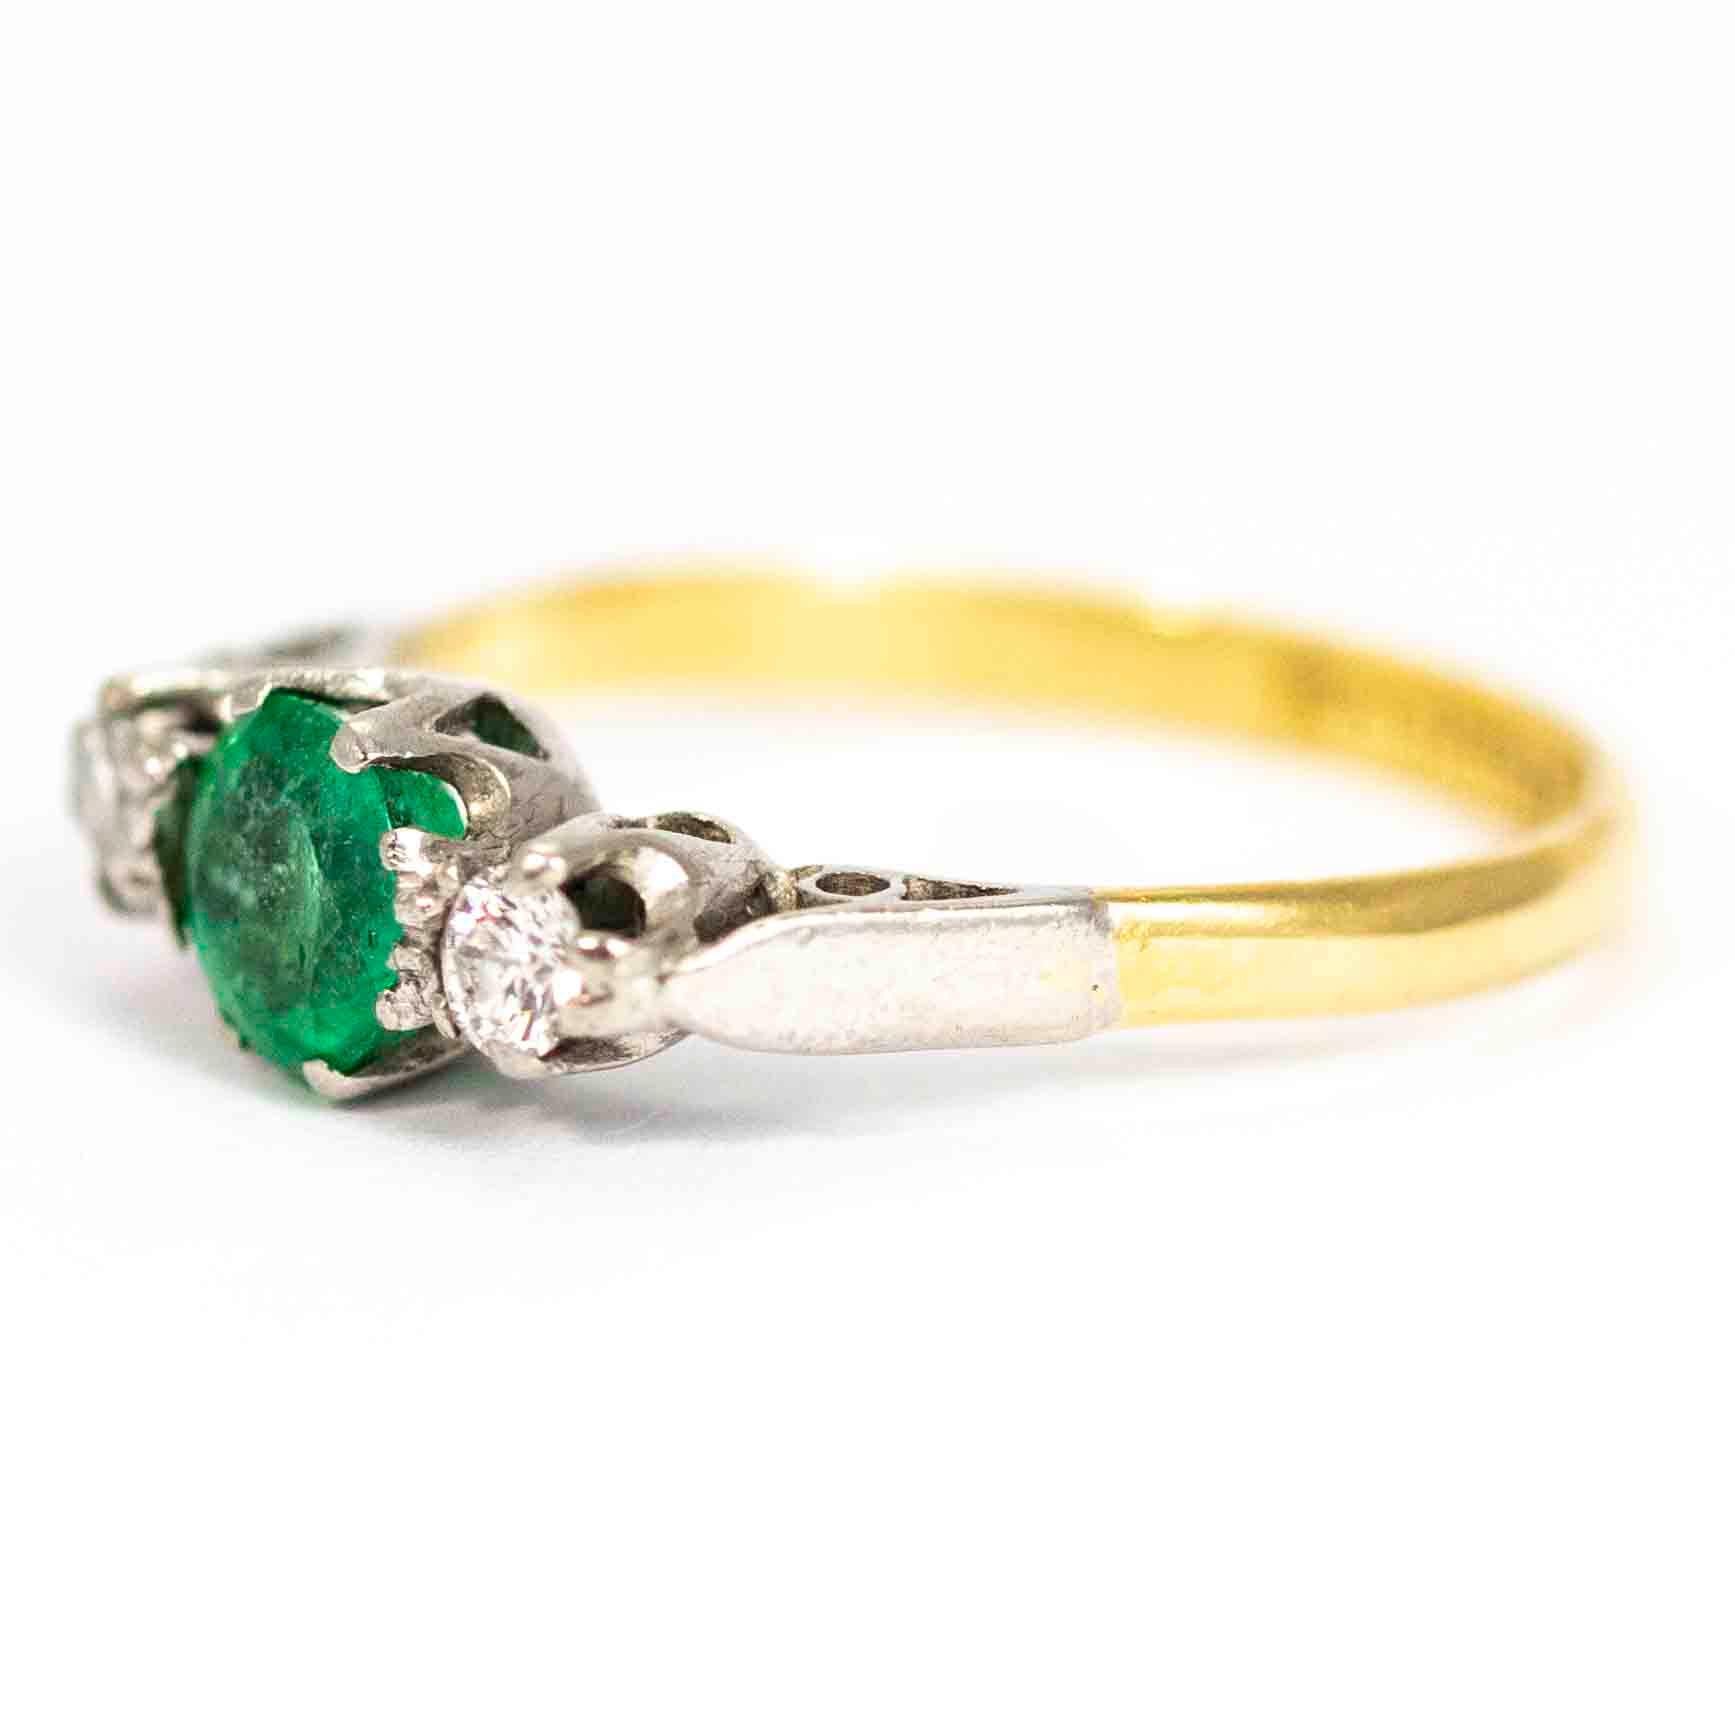 Ein wunderschöner Vintage-Ring mit drei Steinen. In der Mitte befindet sich ein wunderschöner runder Smaragd mit ca. 70 Punkten, der auf beiden Seiten von 10 runden Diamanten mit Punktschliff flankiert wird. Die Steine und Schultern sind in Platin